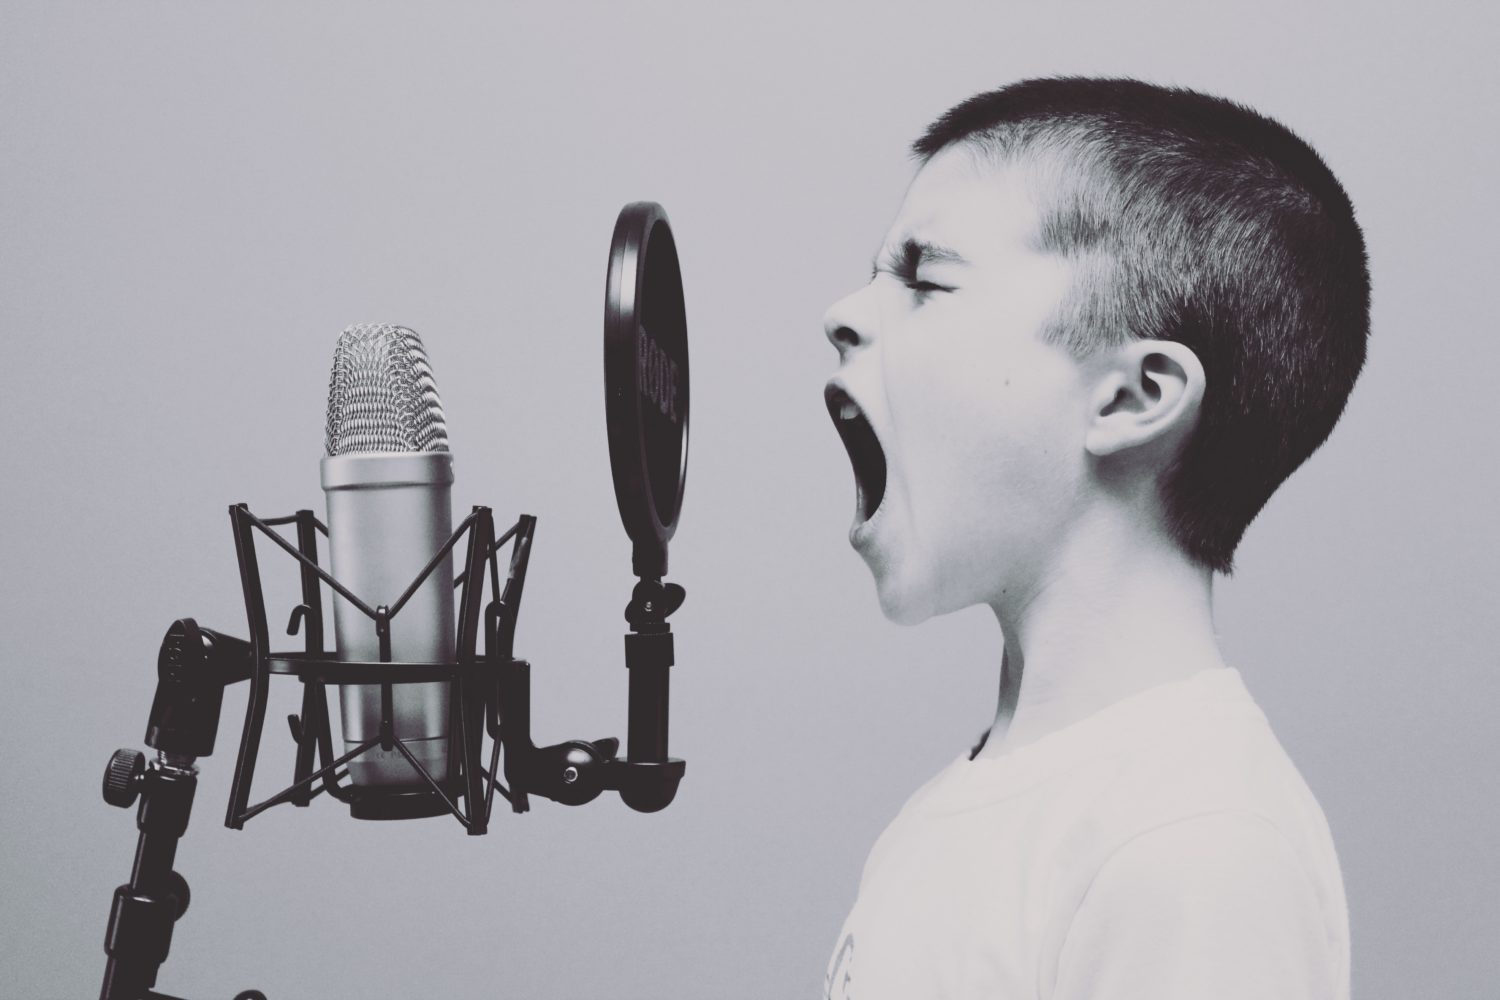 Ein kleiner Junge schreit ins Mikrophon